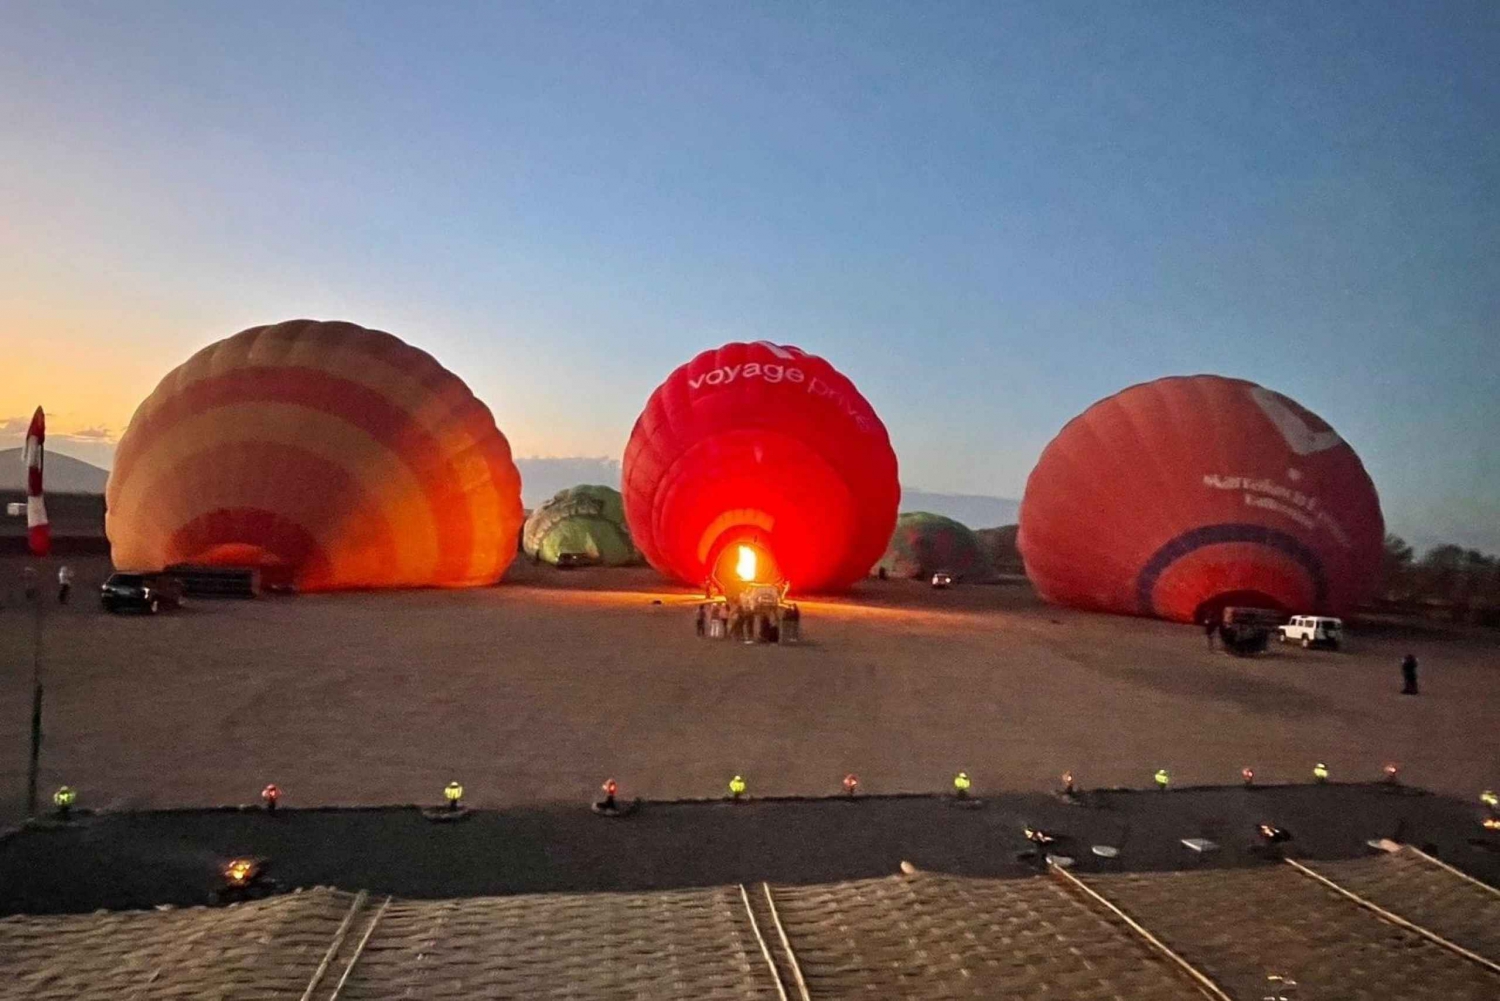 Hot air balloon Marrakech Fly in sky Morocco